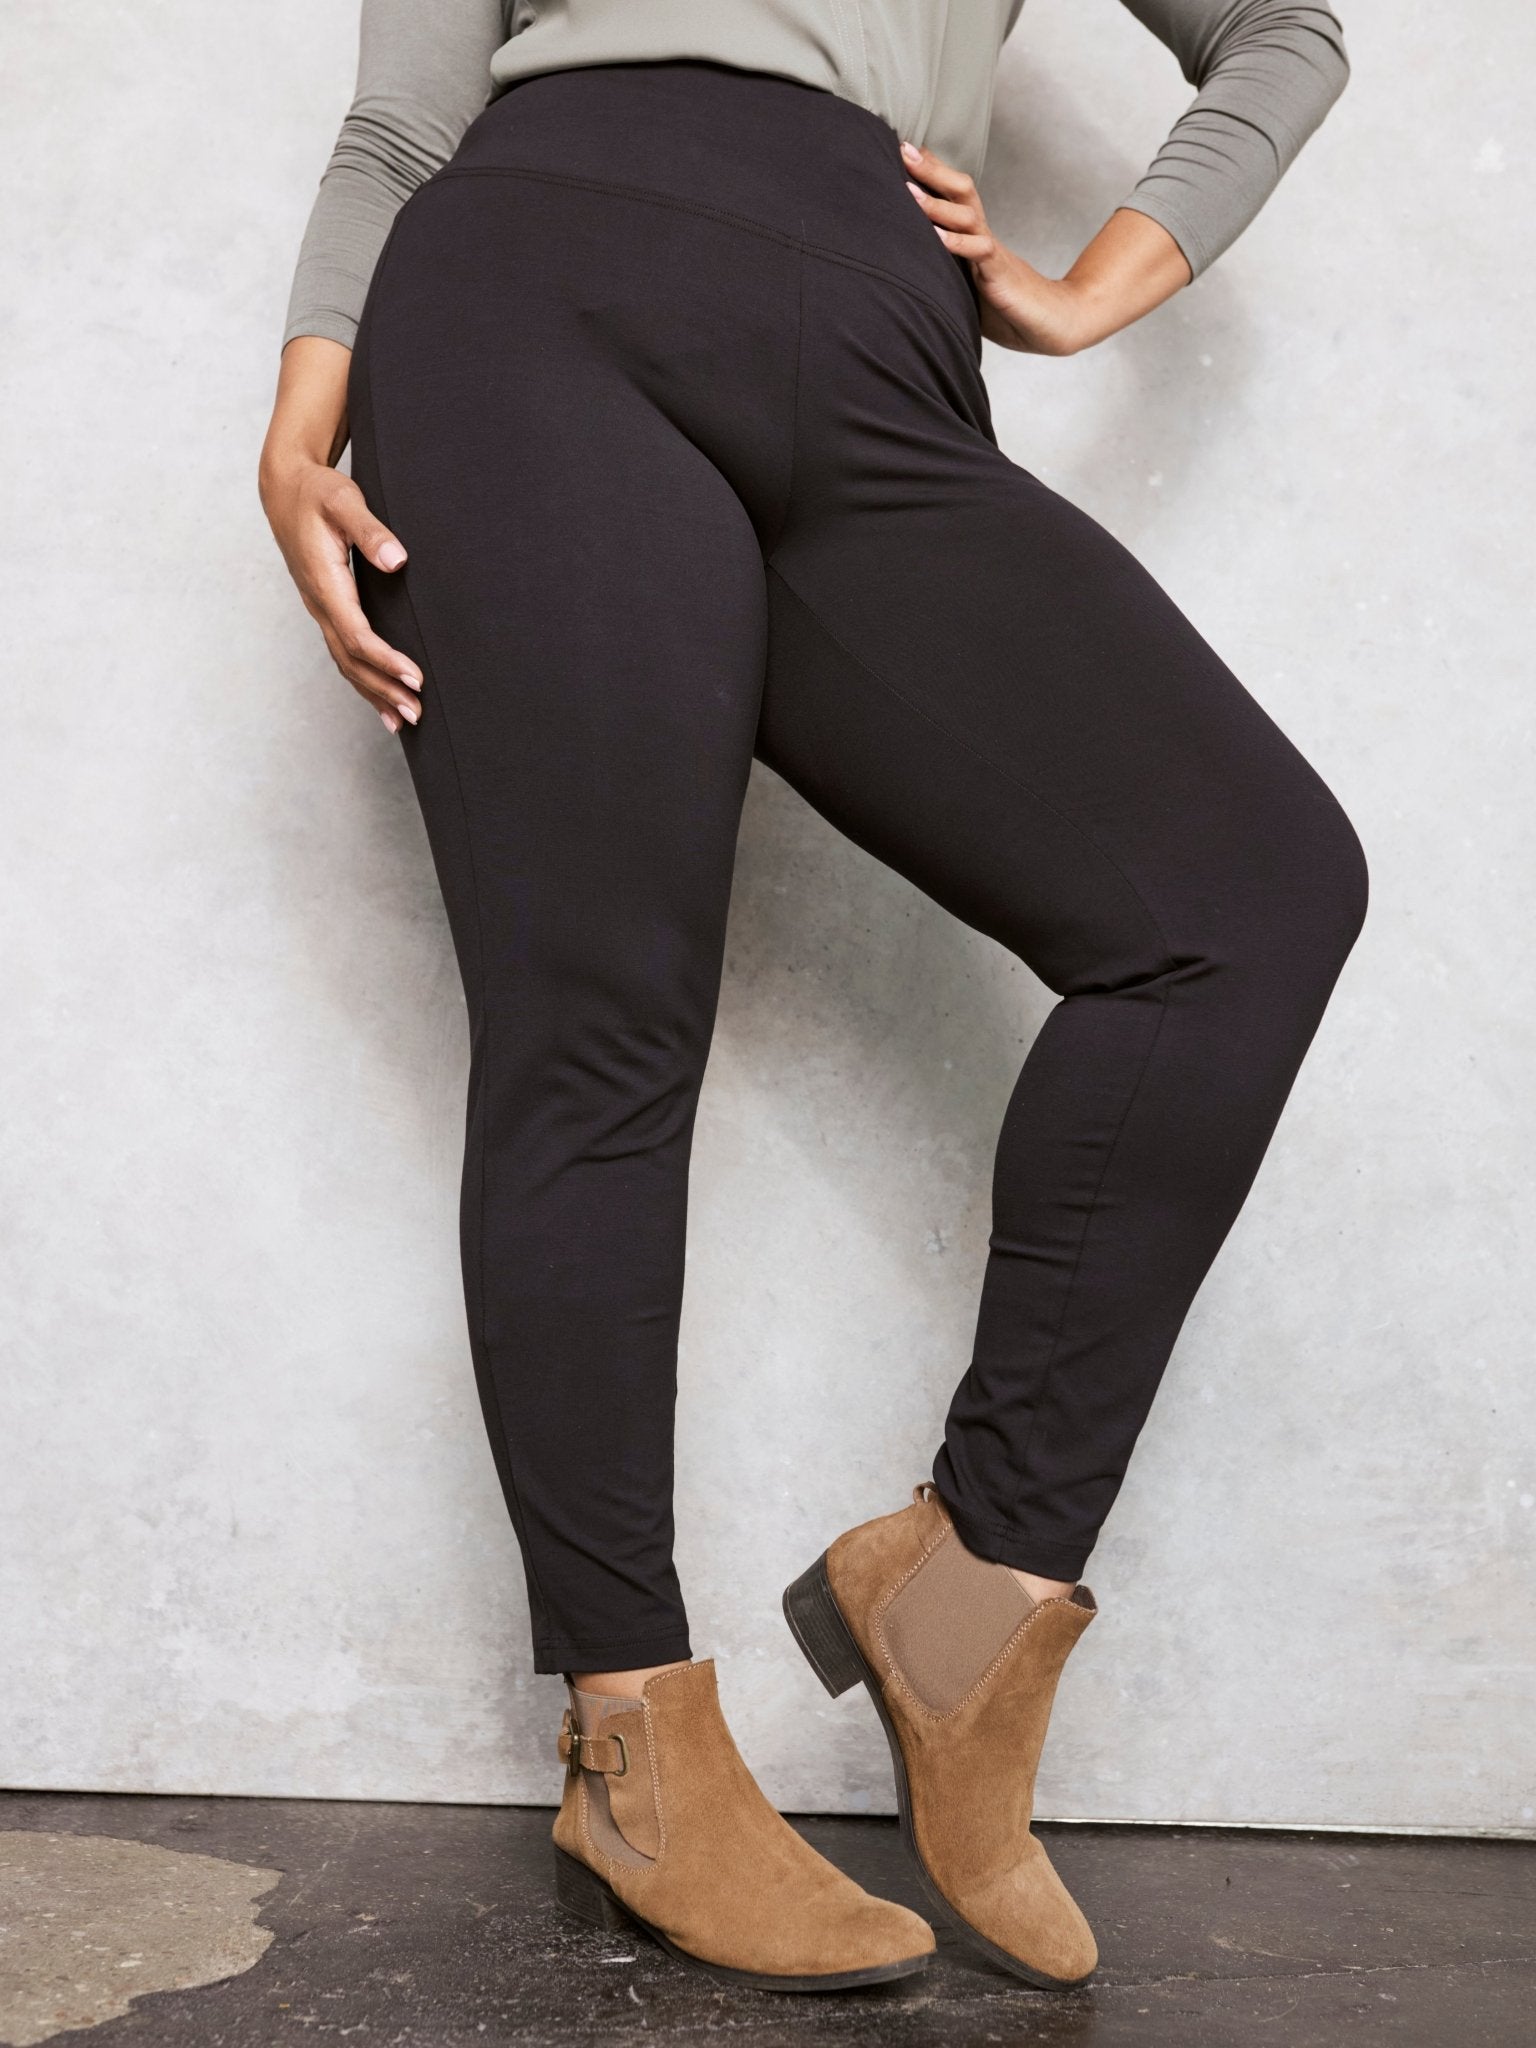 Dressbarn Roz & Ali Women's Stretch Suede Leggings - Black, X-Large